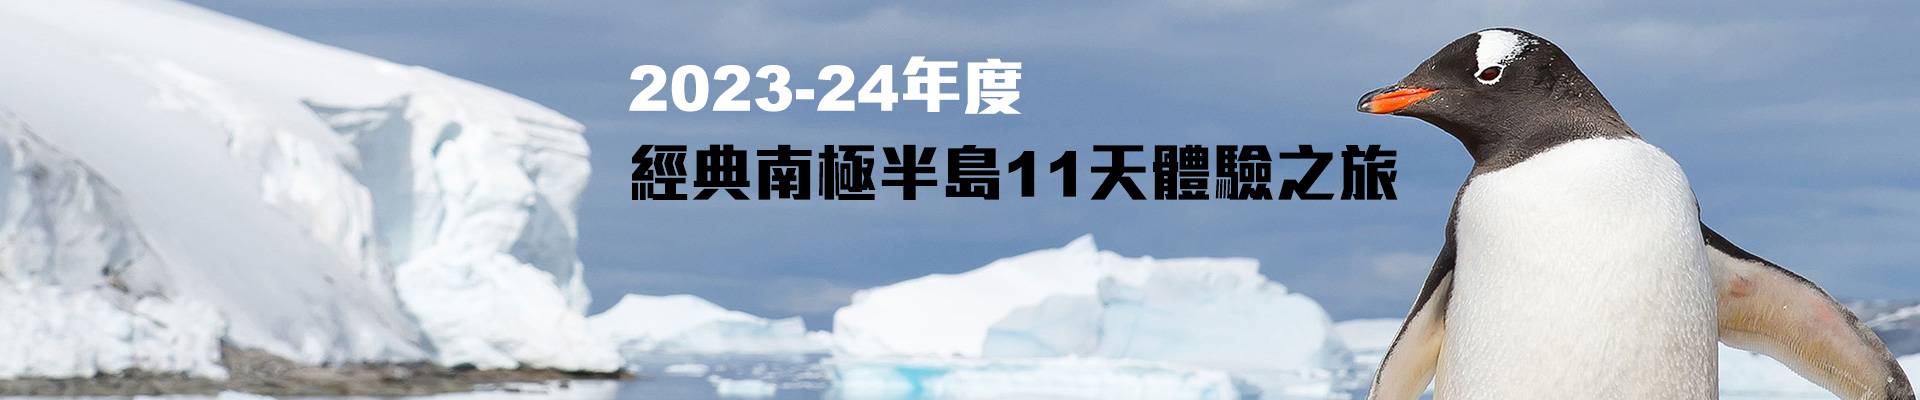 2023-24年度經典南極半島11天體驗之旅